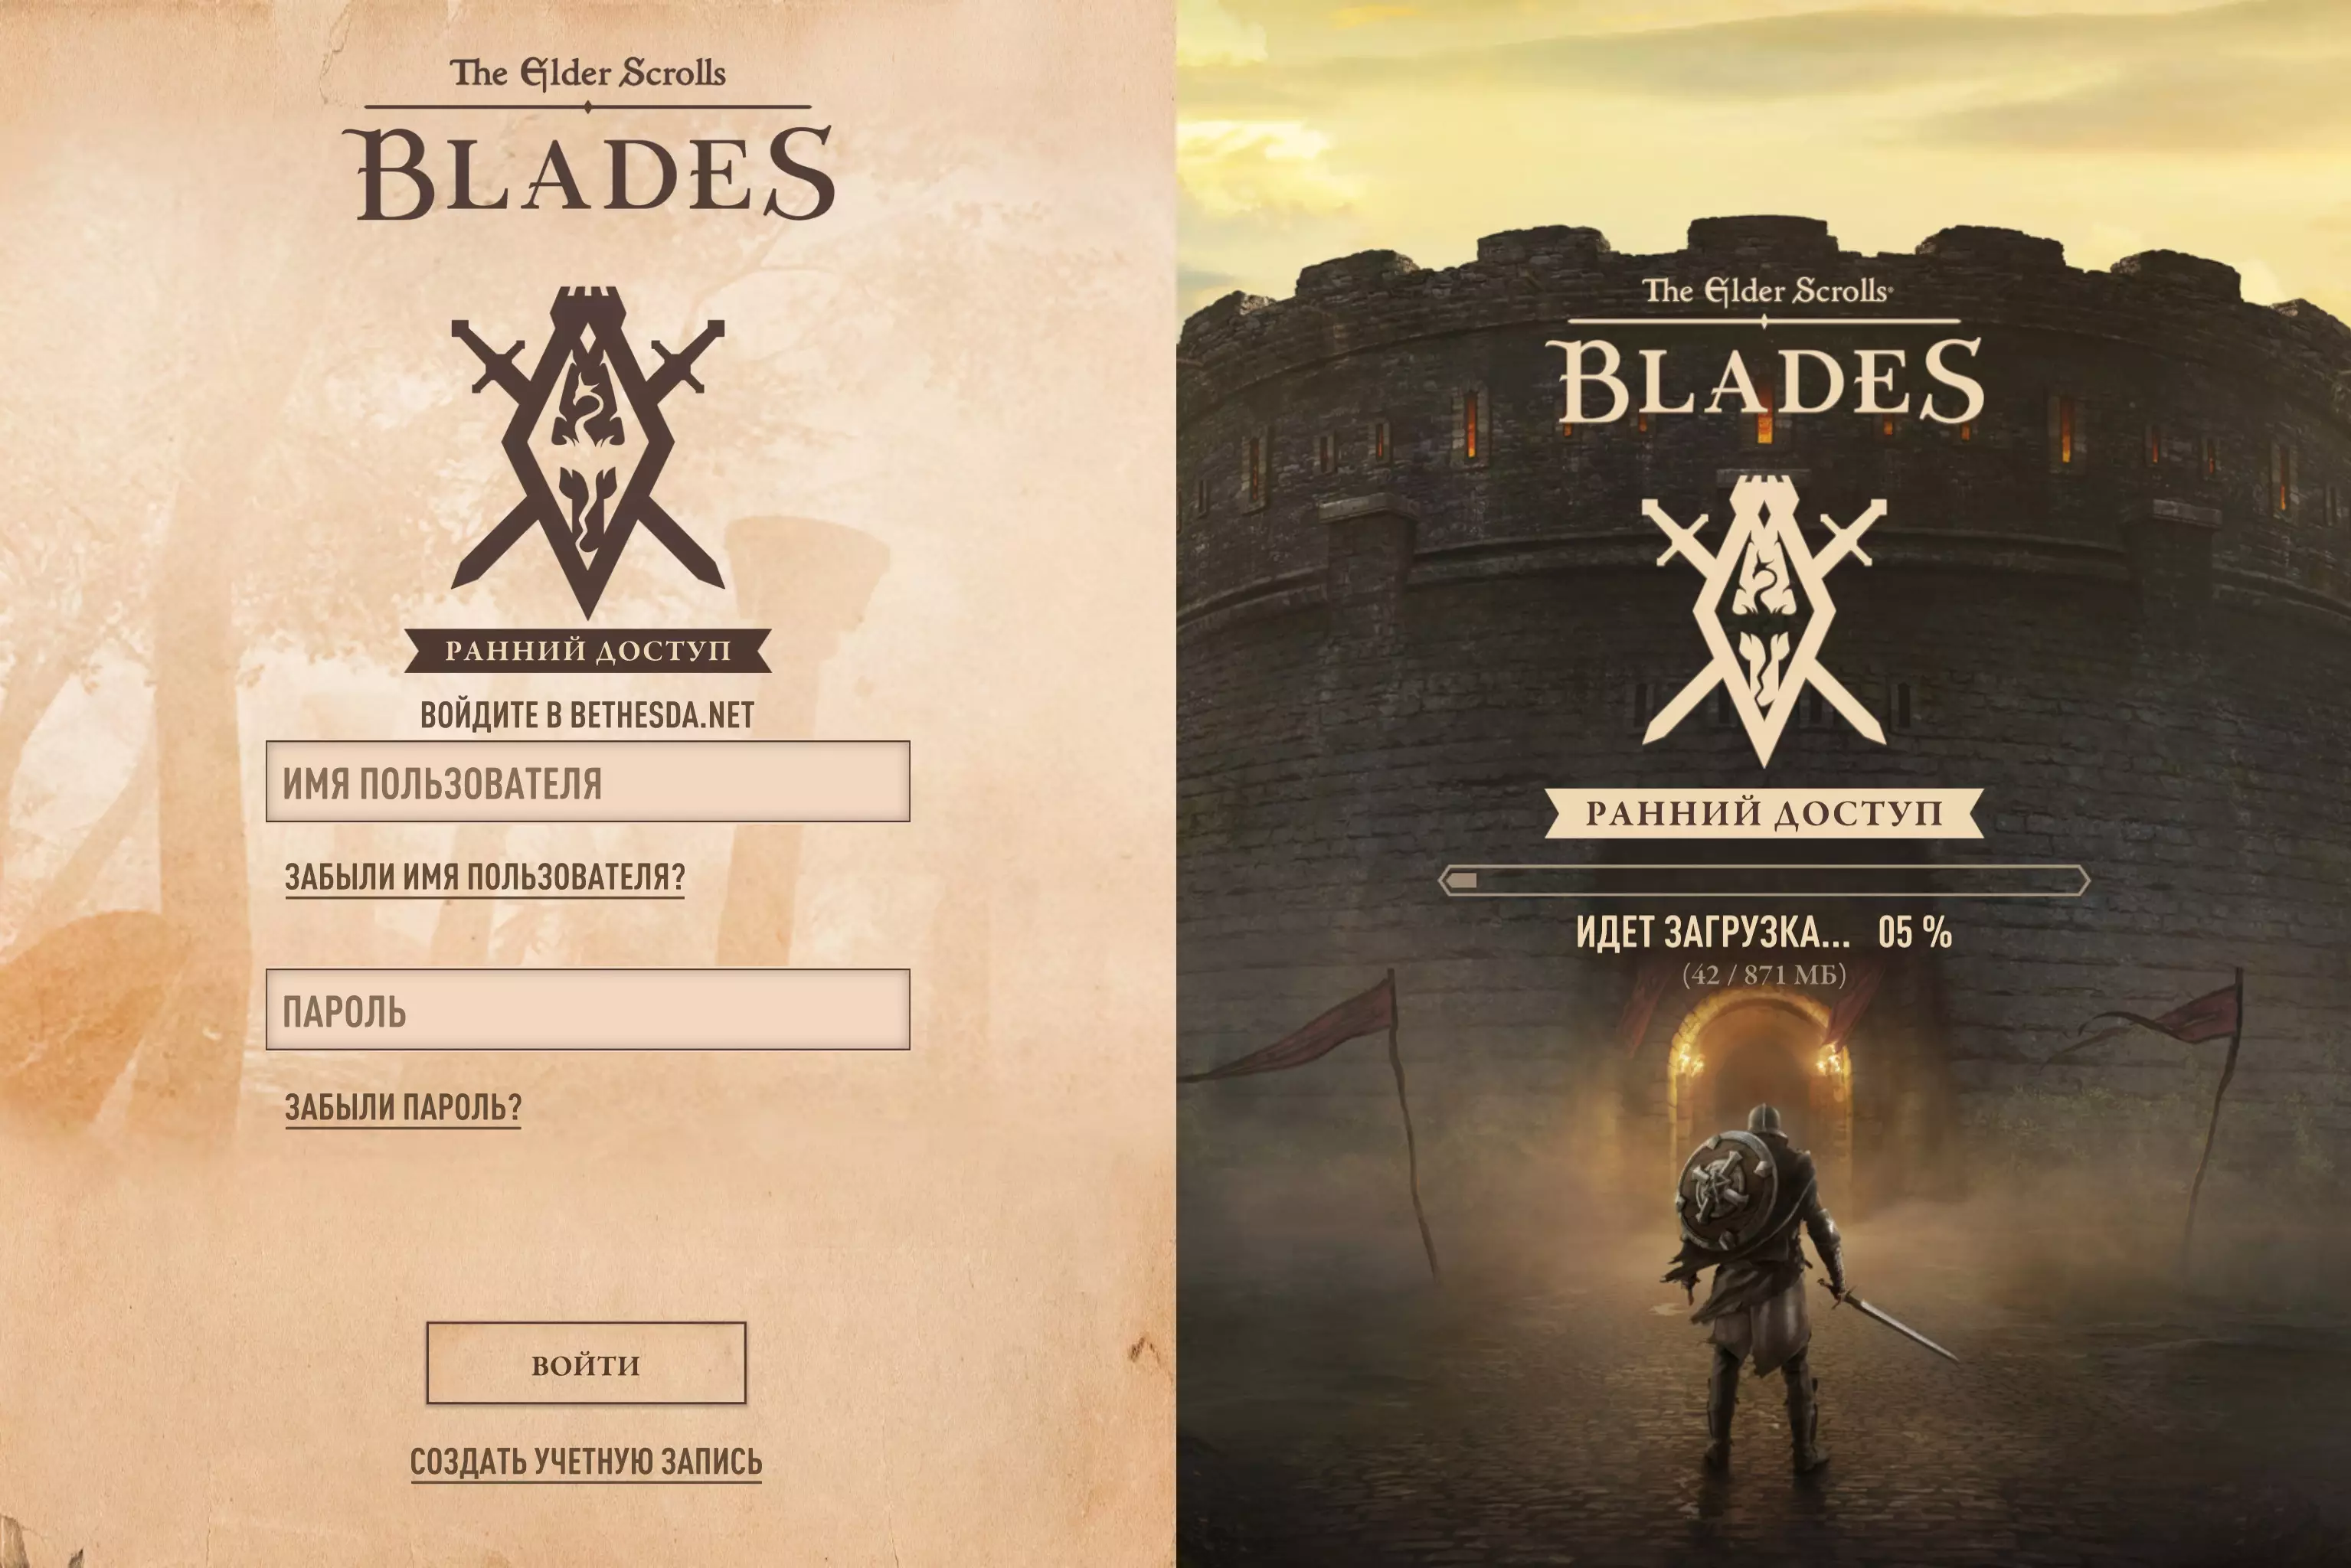 The Elder Scrolls Blades стартовый экран – игра дополнительно потребует 871 МБ места на внутреннем накопителе